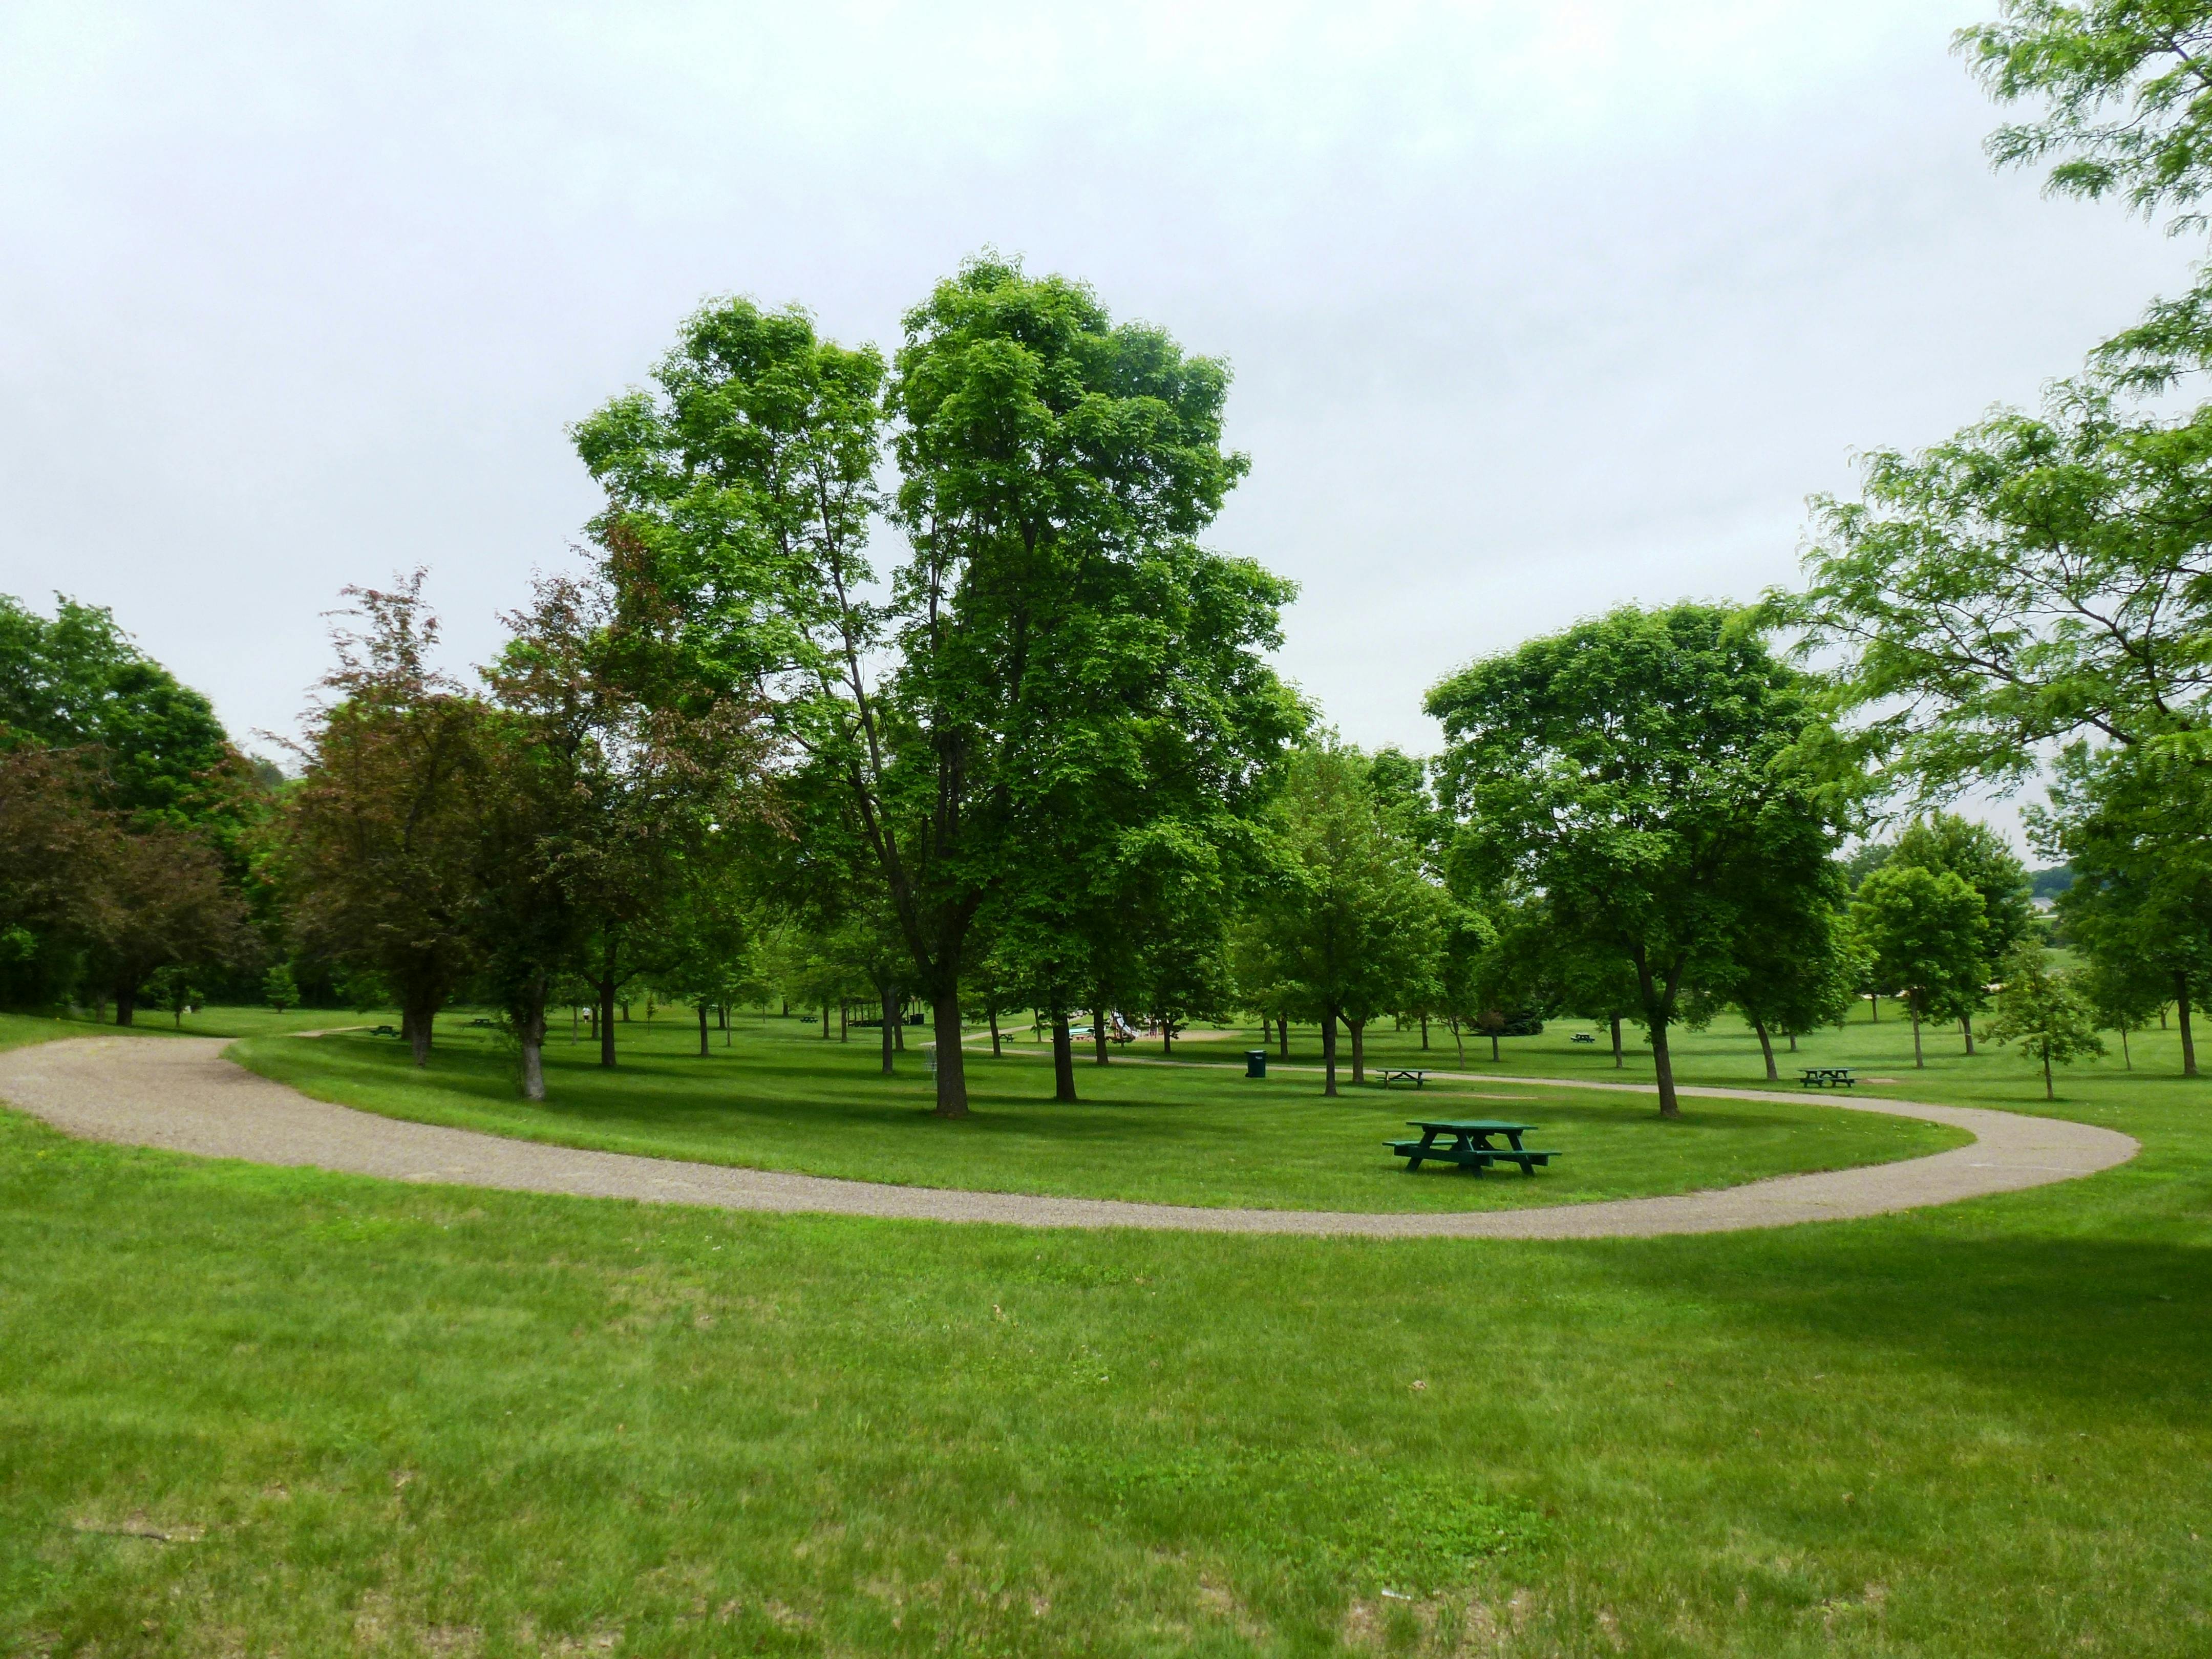 Hoffman Park View of trees in south of looping pathway.JPG